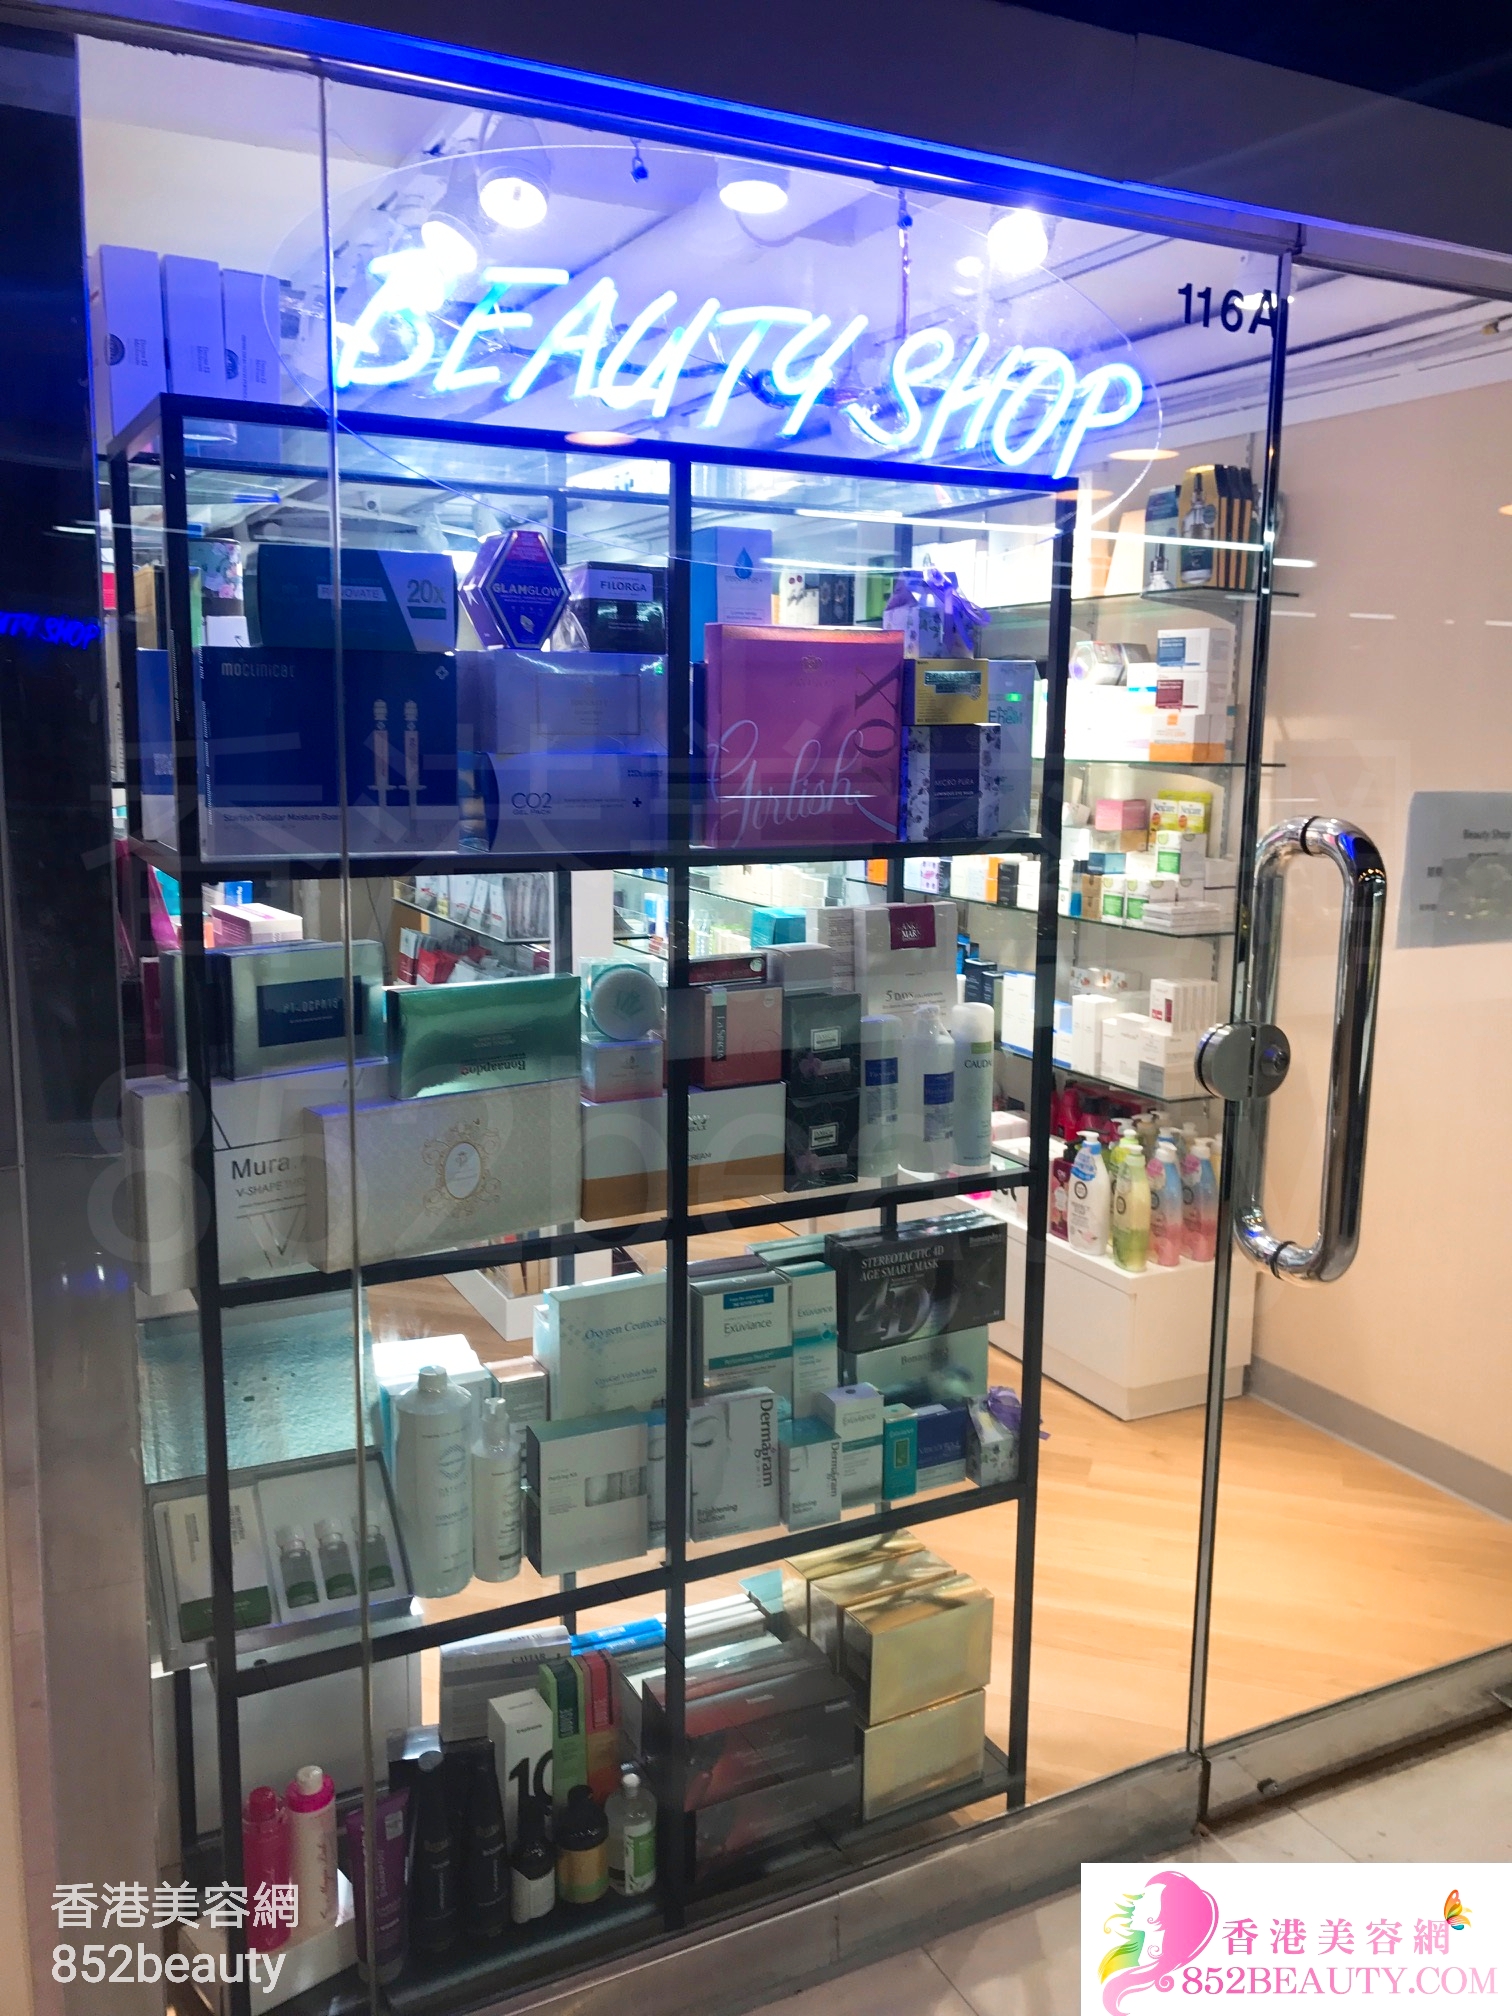 面部护理: Beauty Shop